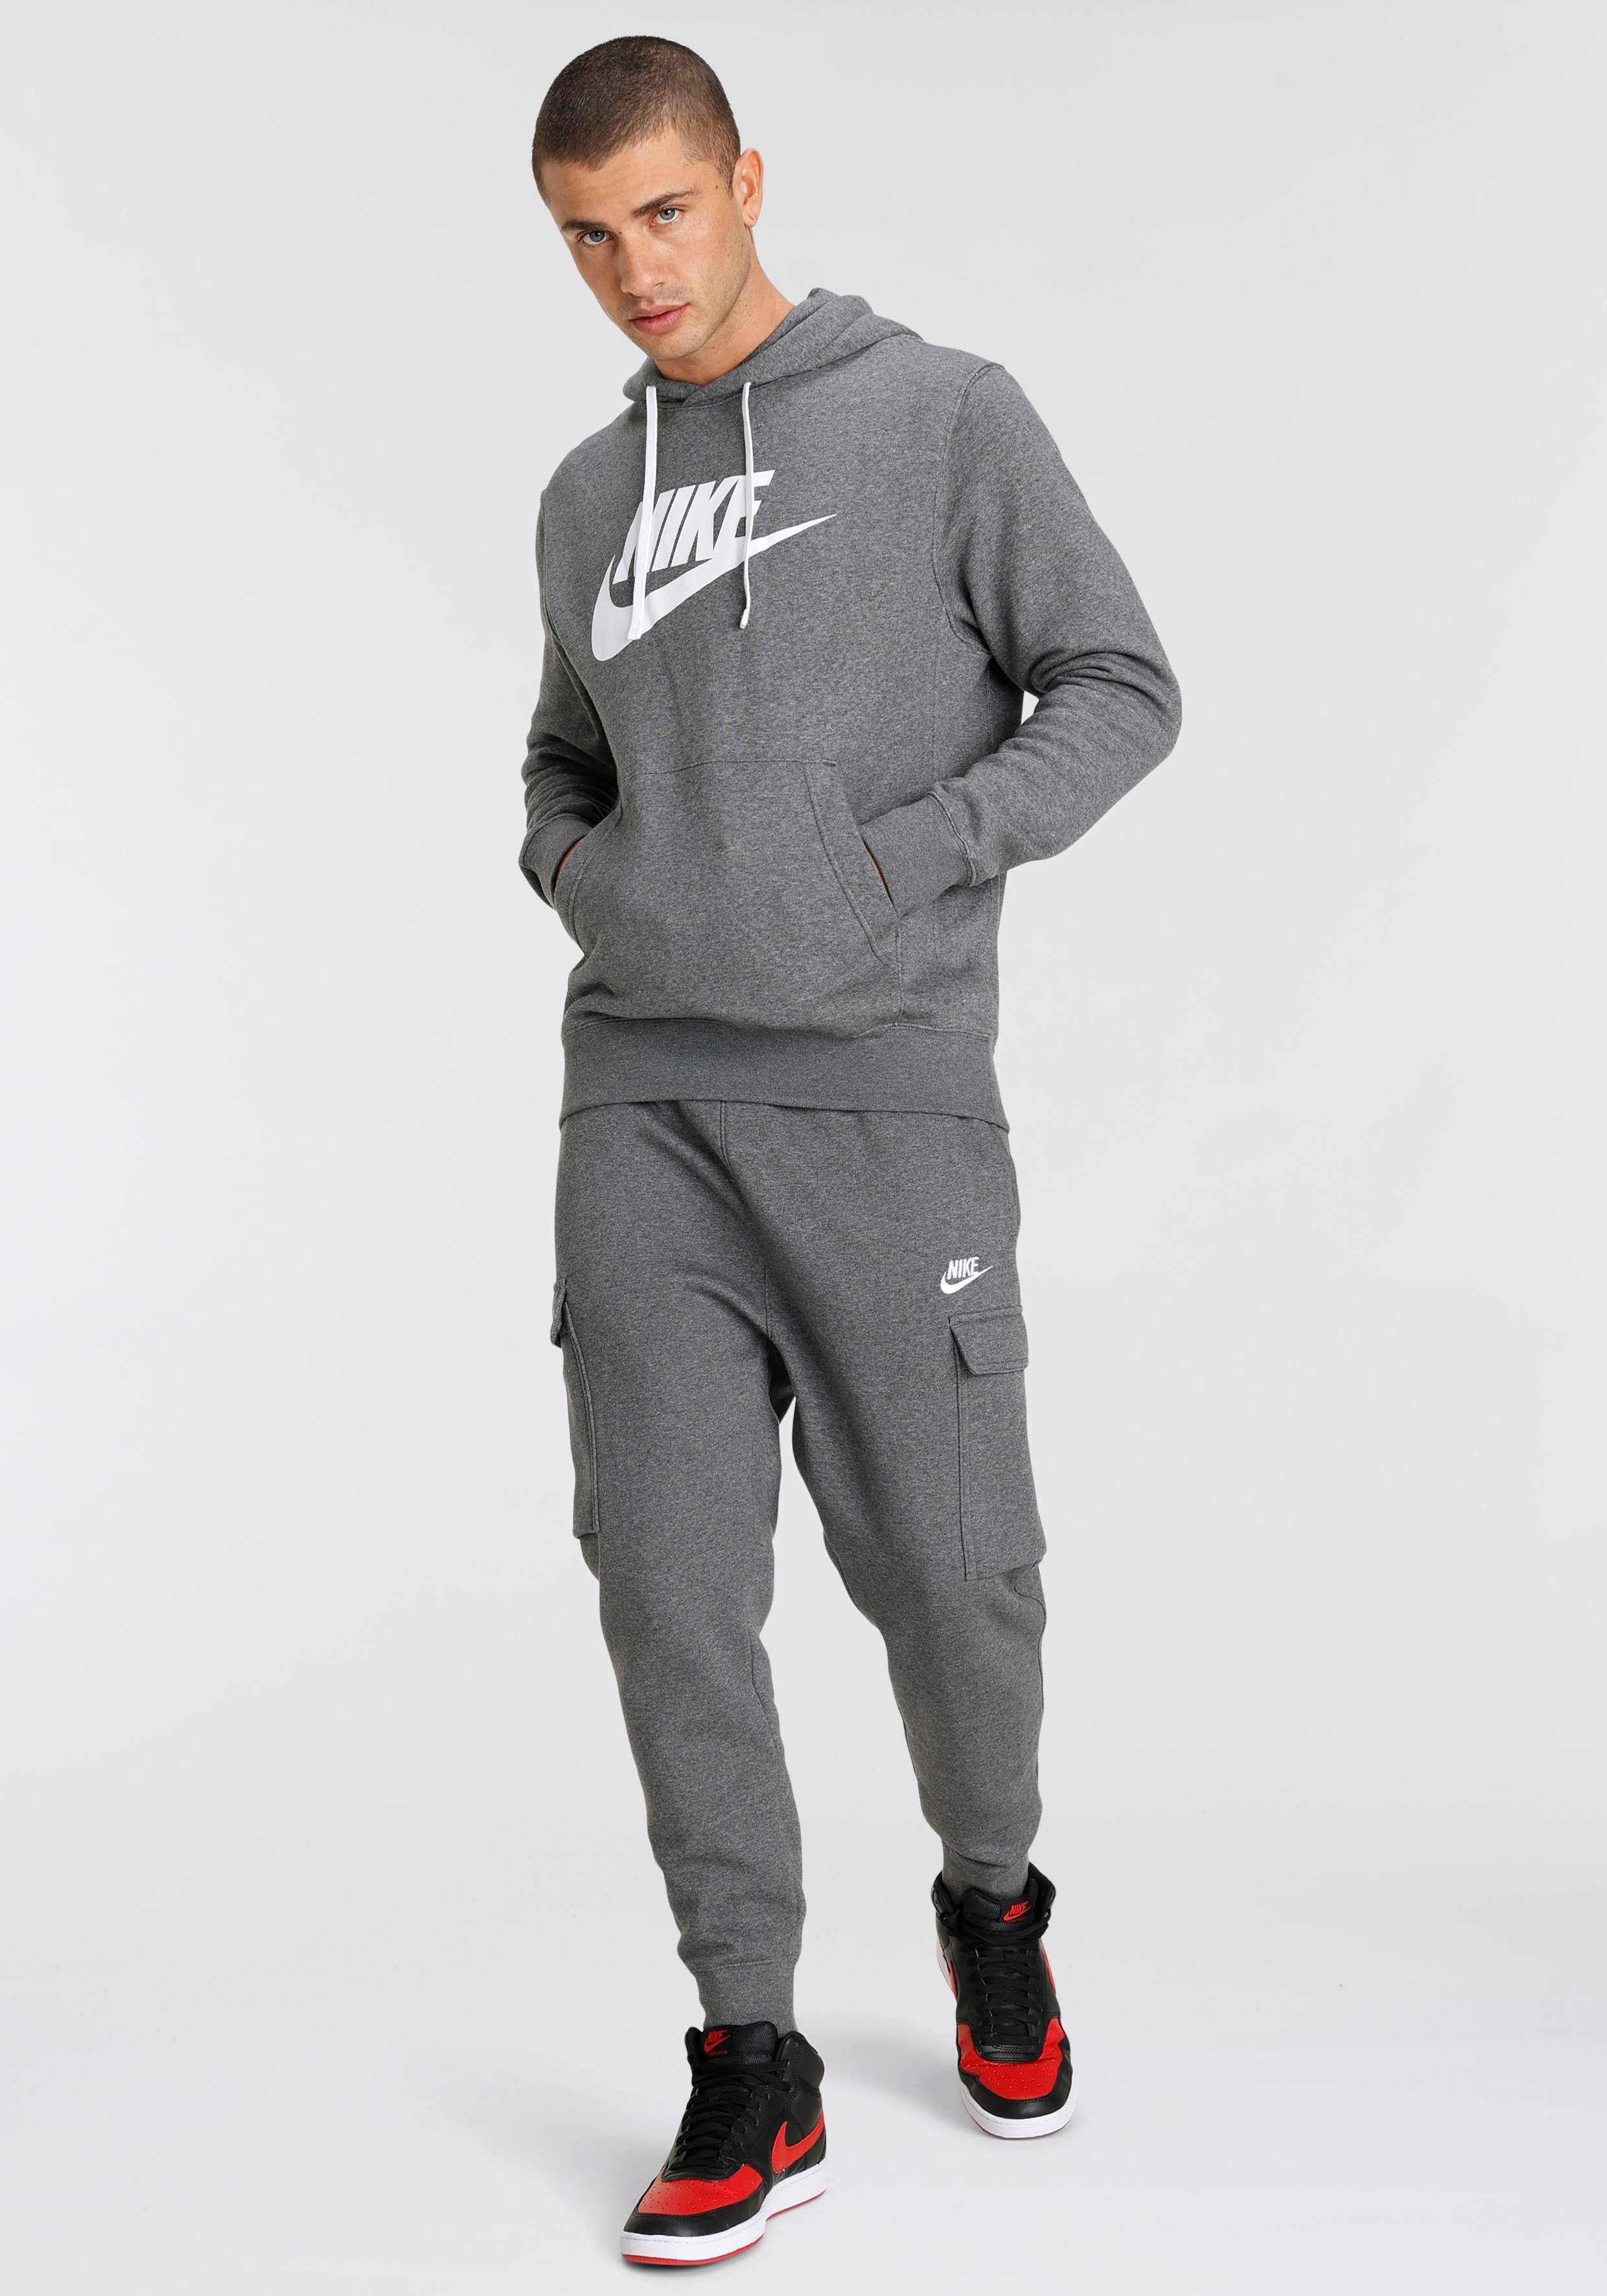 OTTO Baumwolle Nike Jogginganzüge kaufen | online